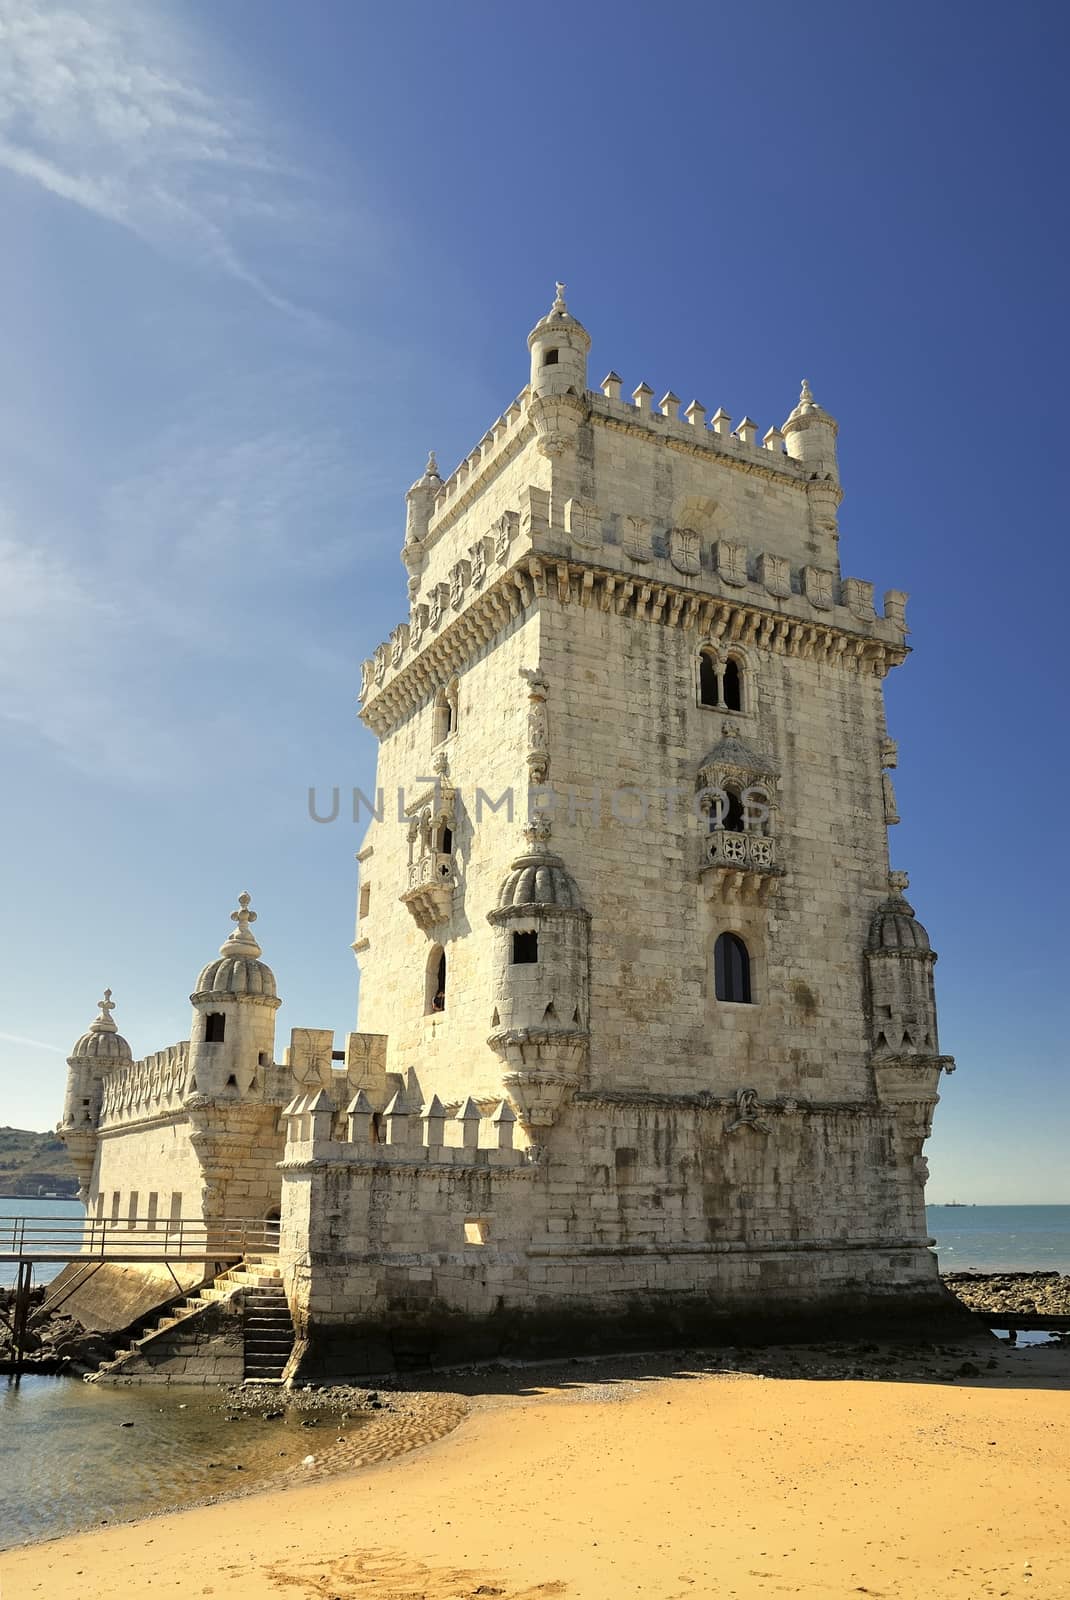 Tower of Belem in Lisboa.